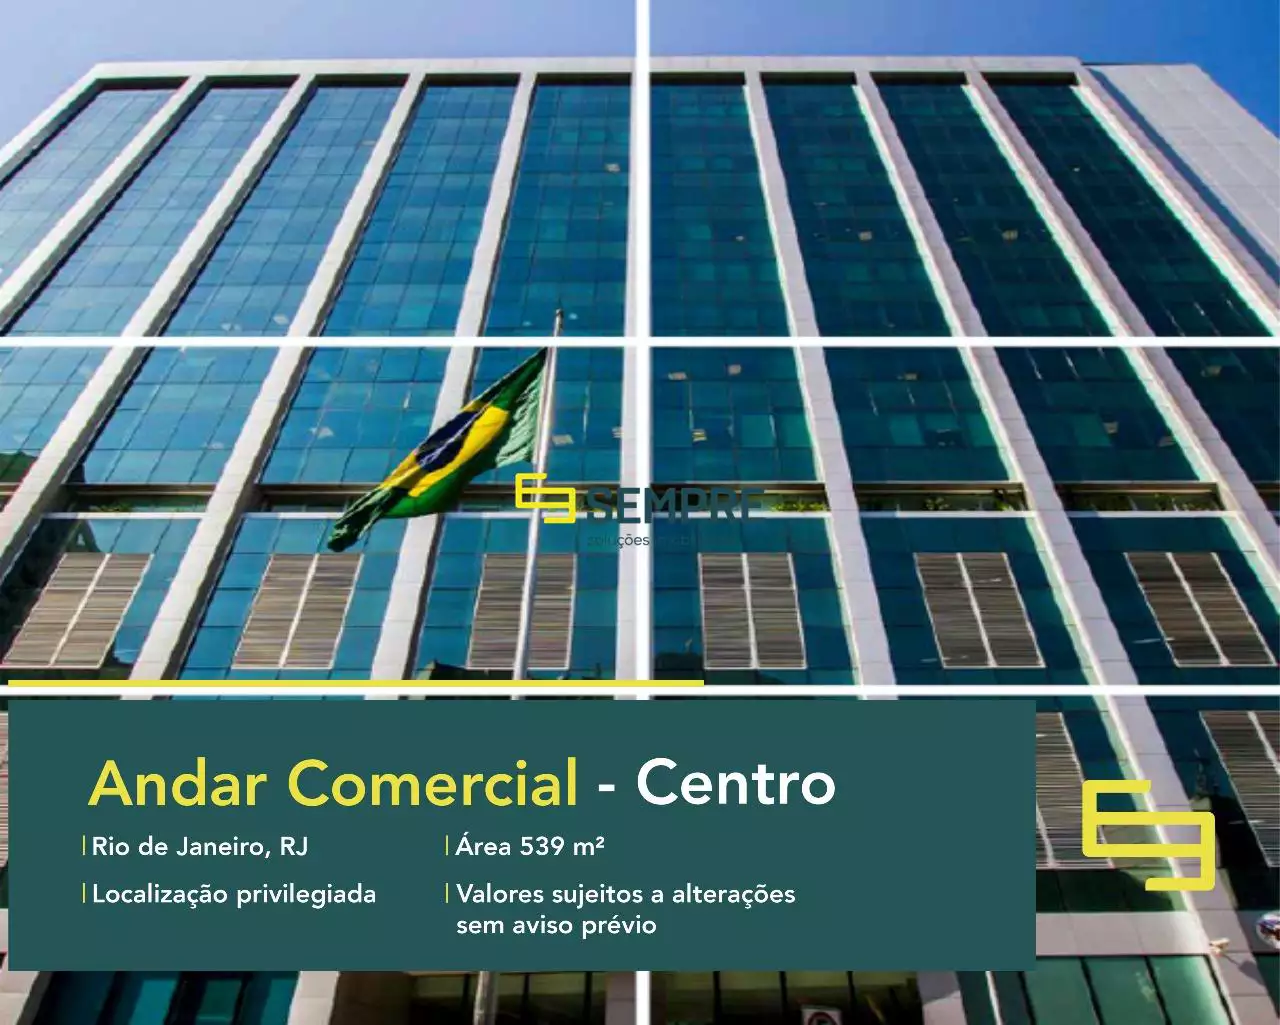 Andar corporativo no Lagoa Corporate para locação - RJ, excelente localização. O estabelecimento comercial conta com área de 539,45 m².